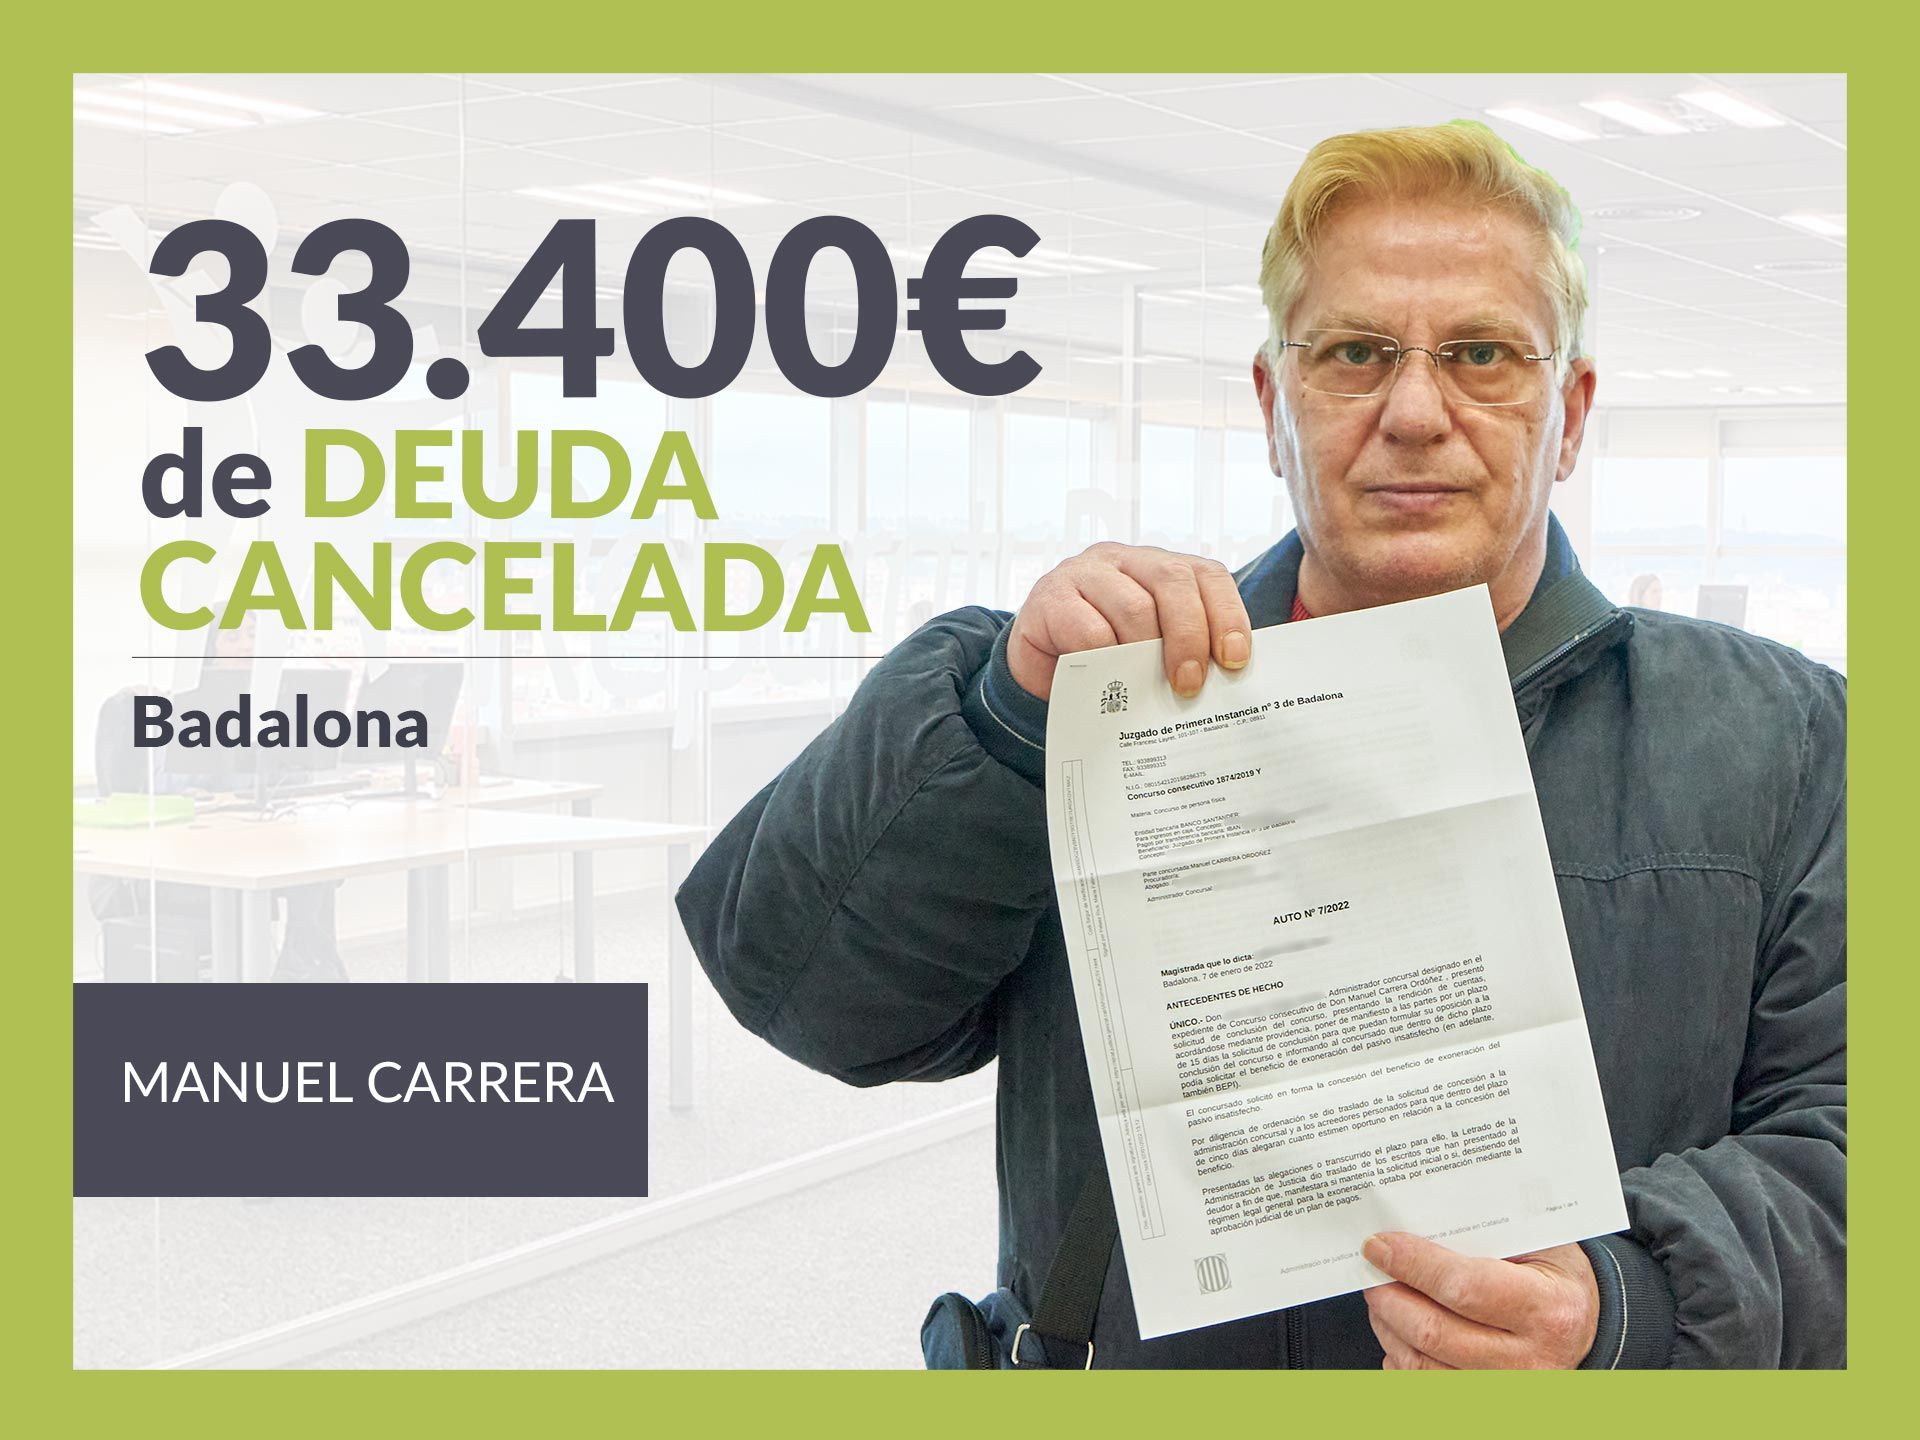 Repara tu Deuda Abogados cancela 33.400 ? en Badalona (Barcelona) con la Ley de Segunda Oportunidad